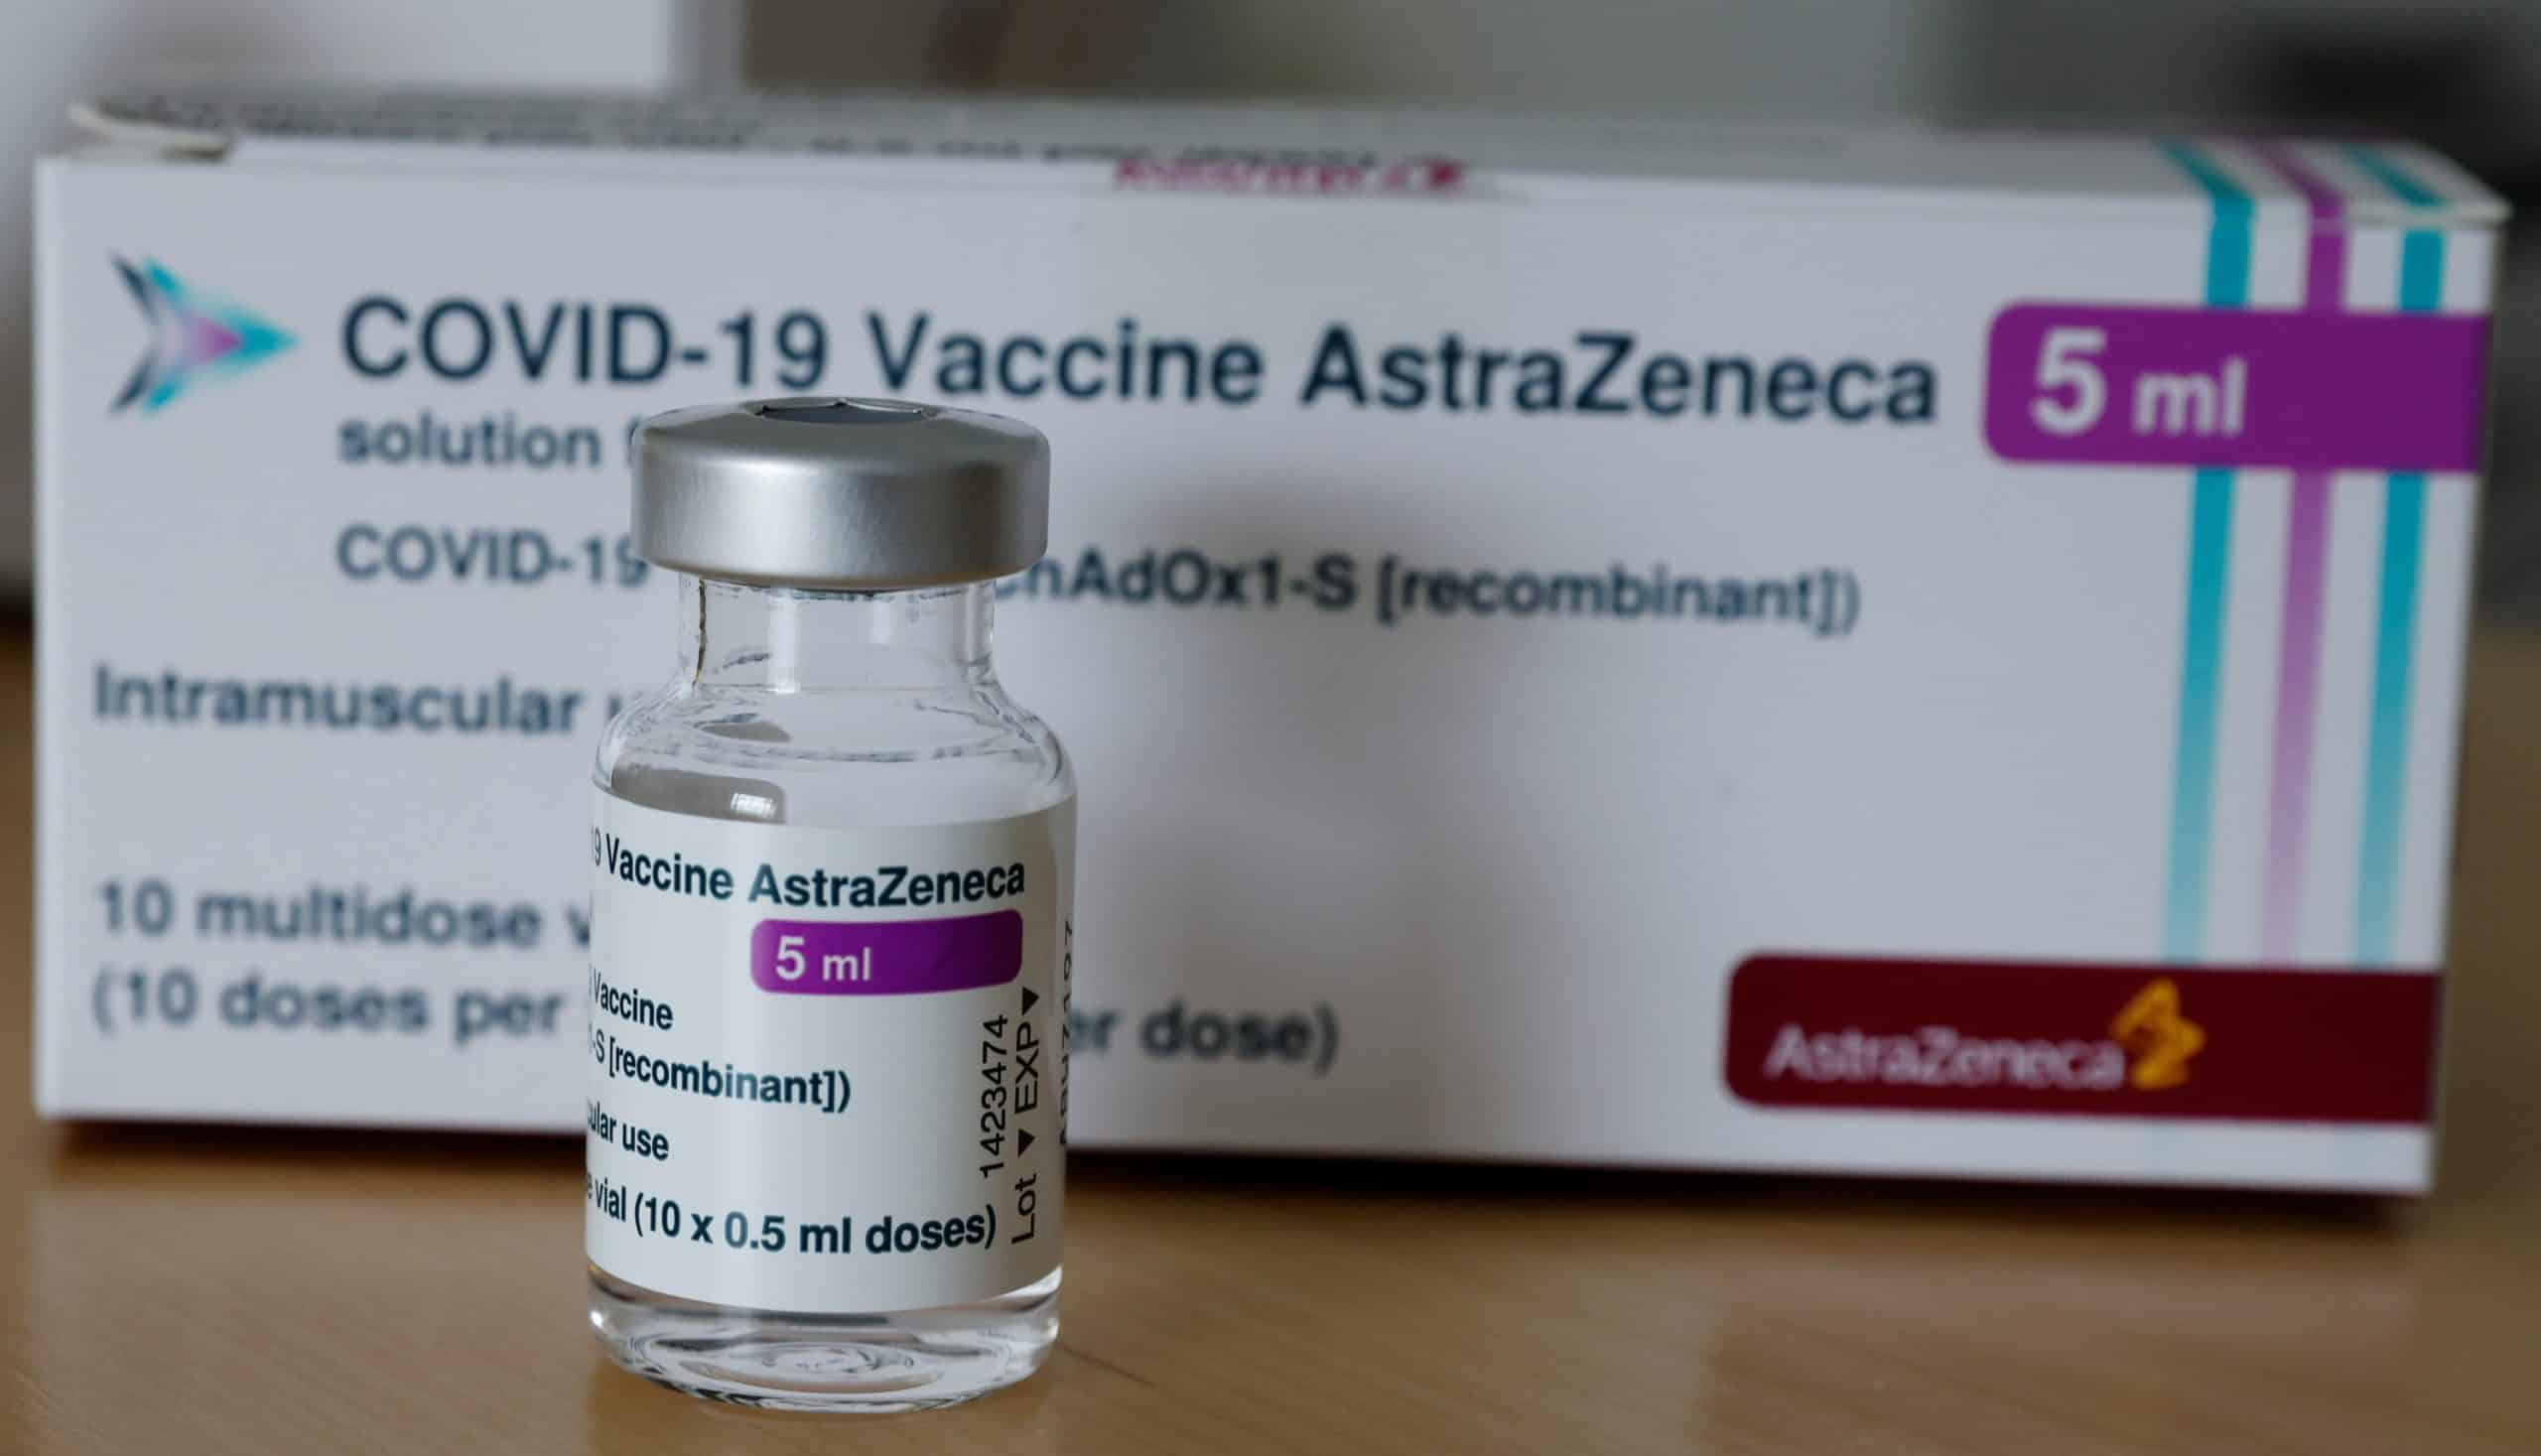 Anunț bombă despre vaccinul AstraZeneca! Toți cei care s-au vaccinat deja trebuie să știe: Va fi pe viață!